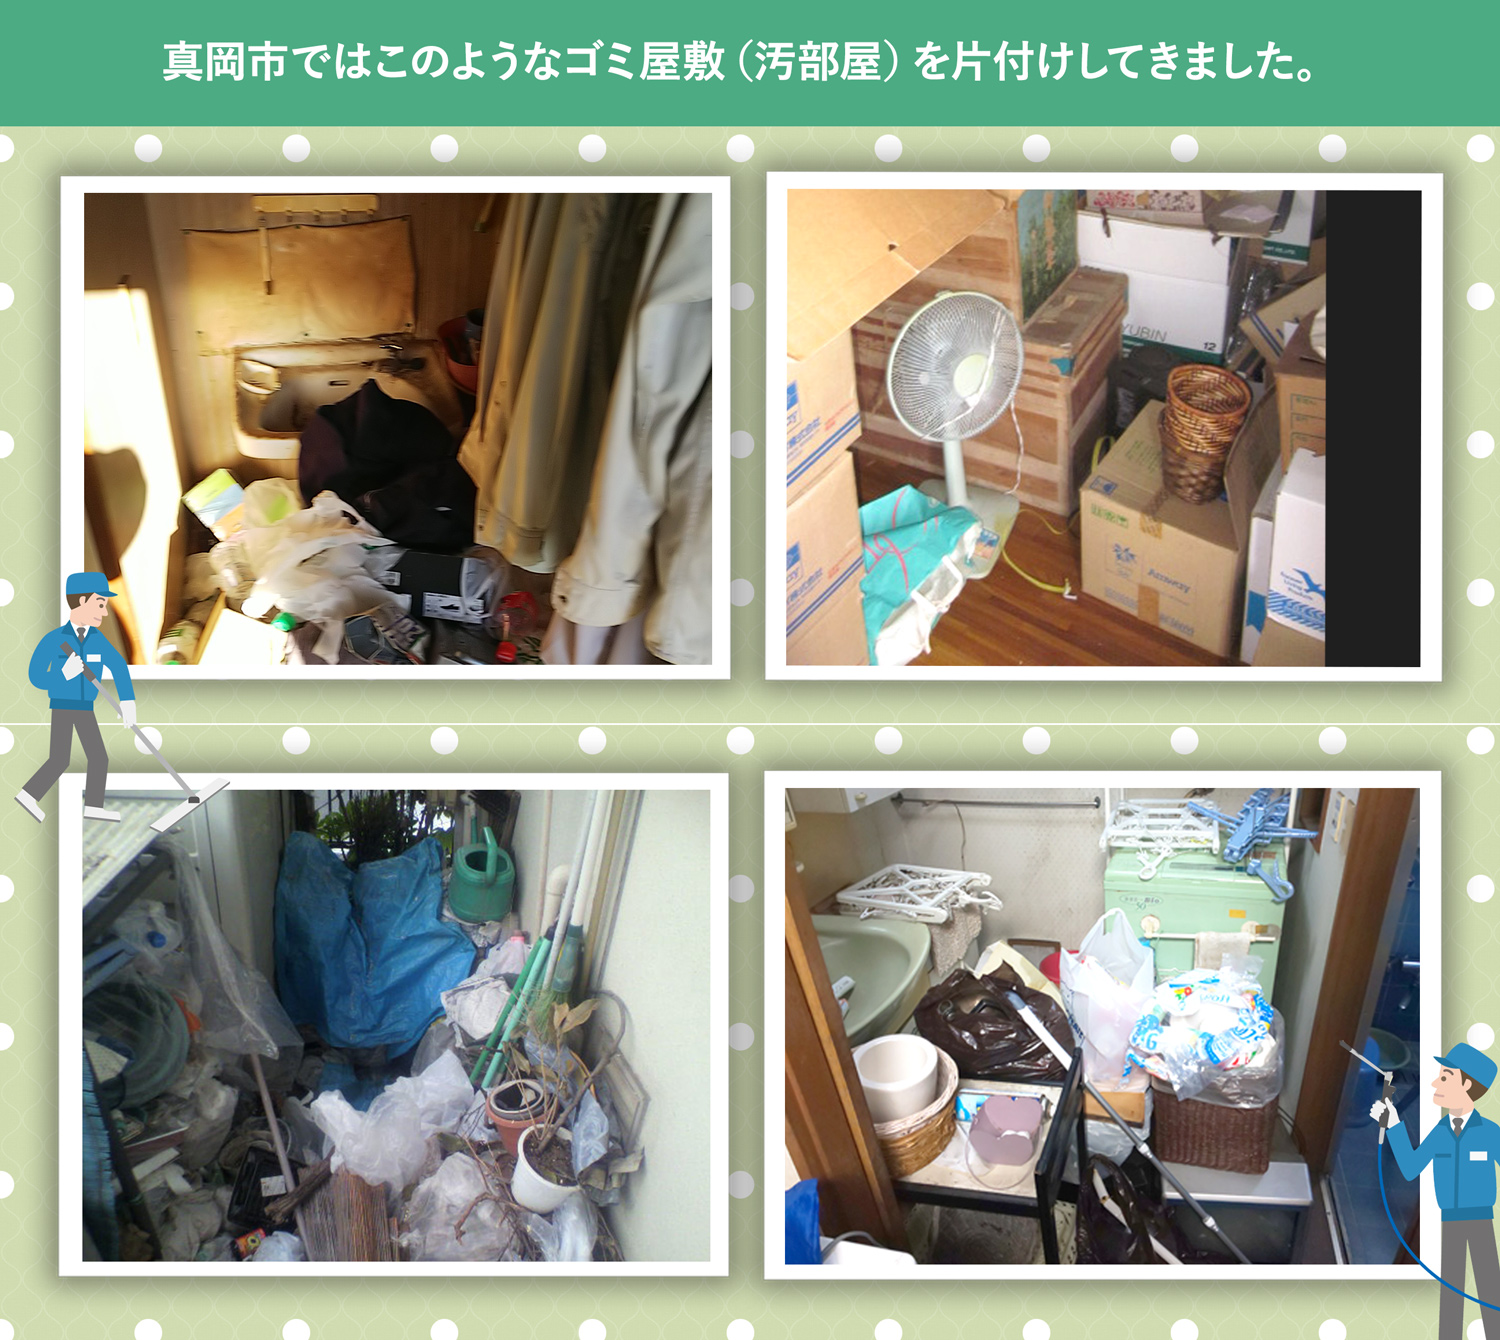 真岡市で行ったで行ったごみ屋敷・汚部屋の片付けの一例